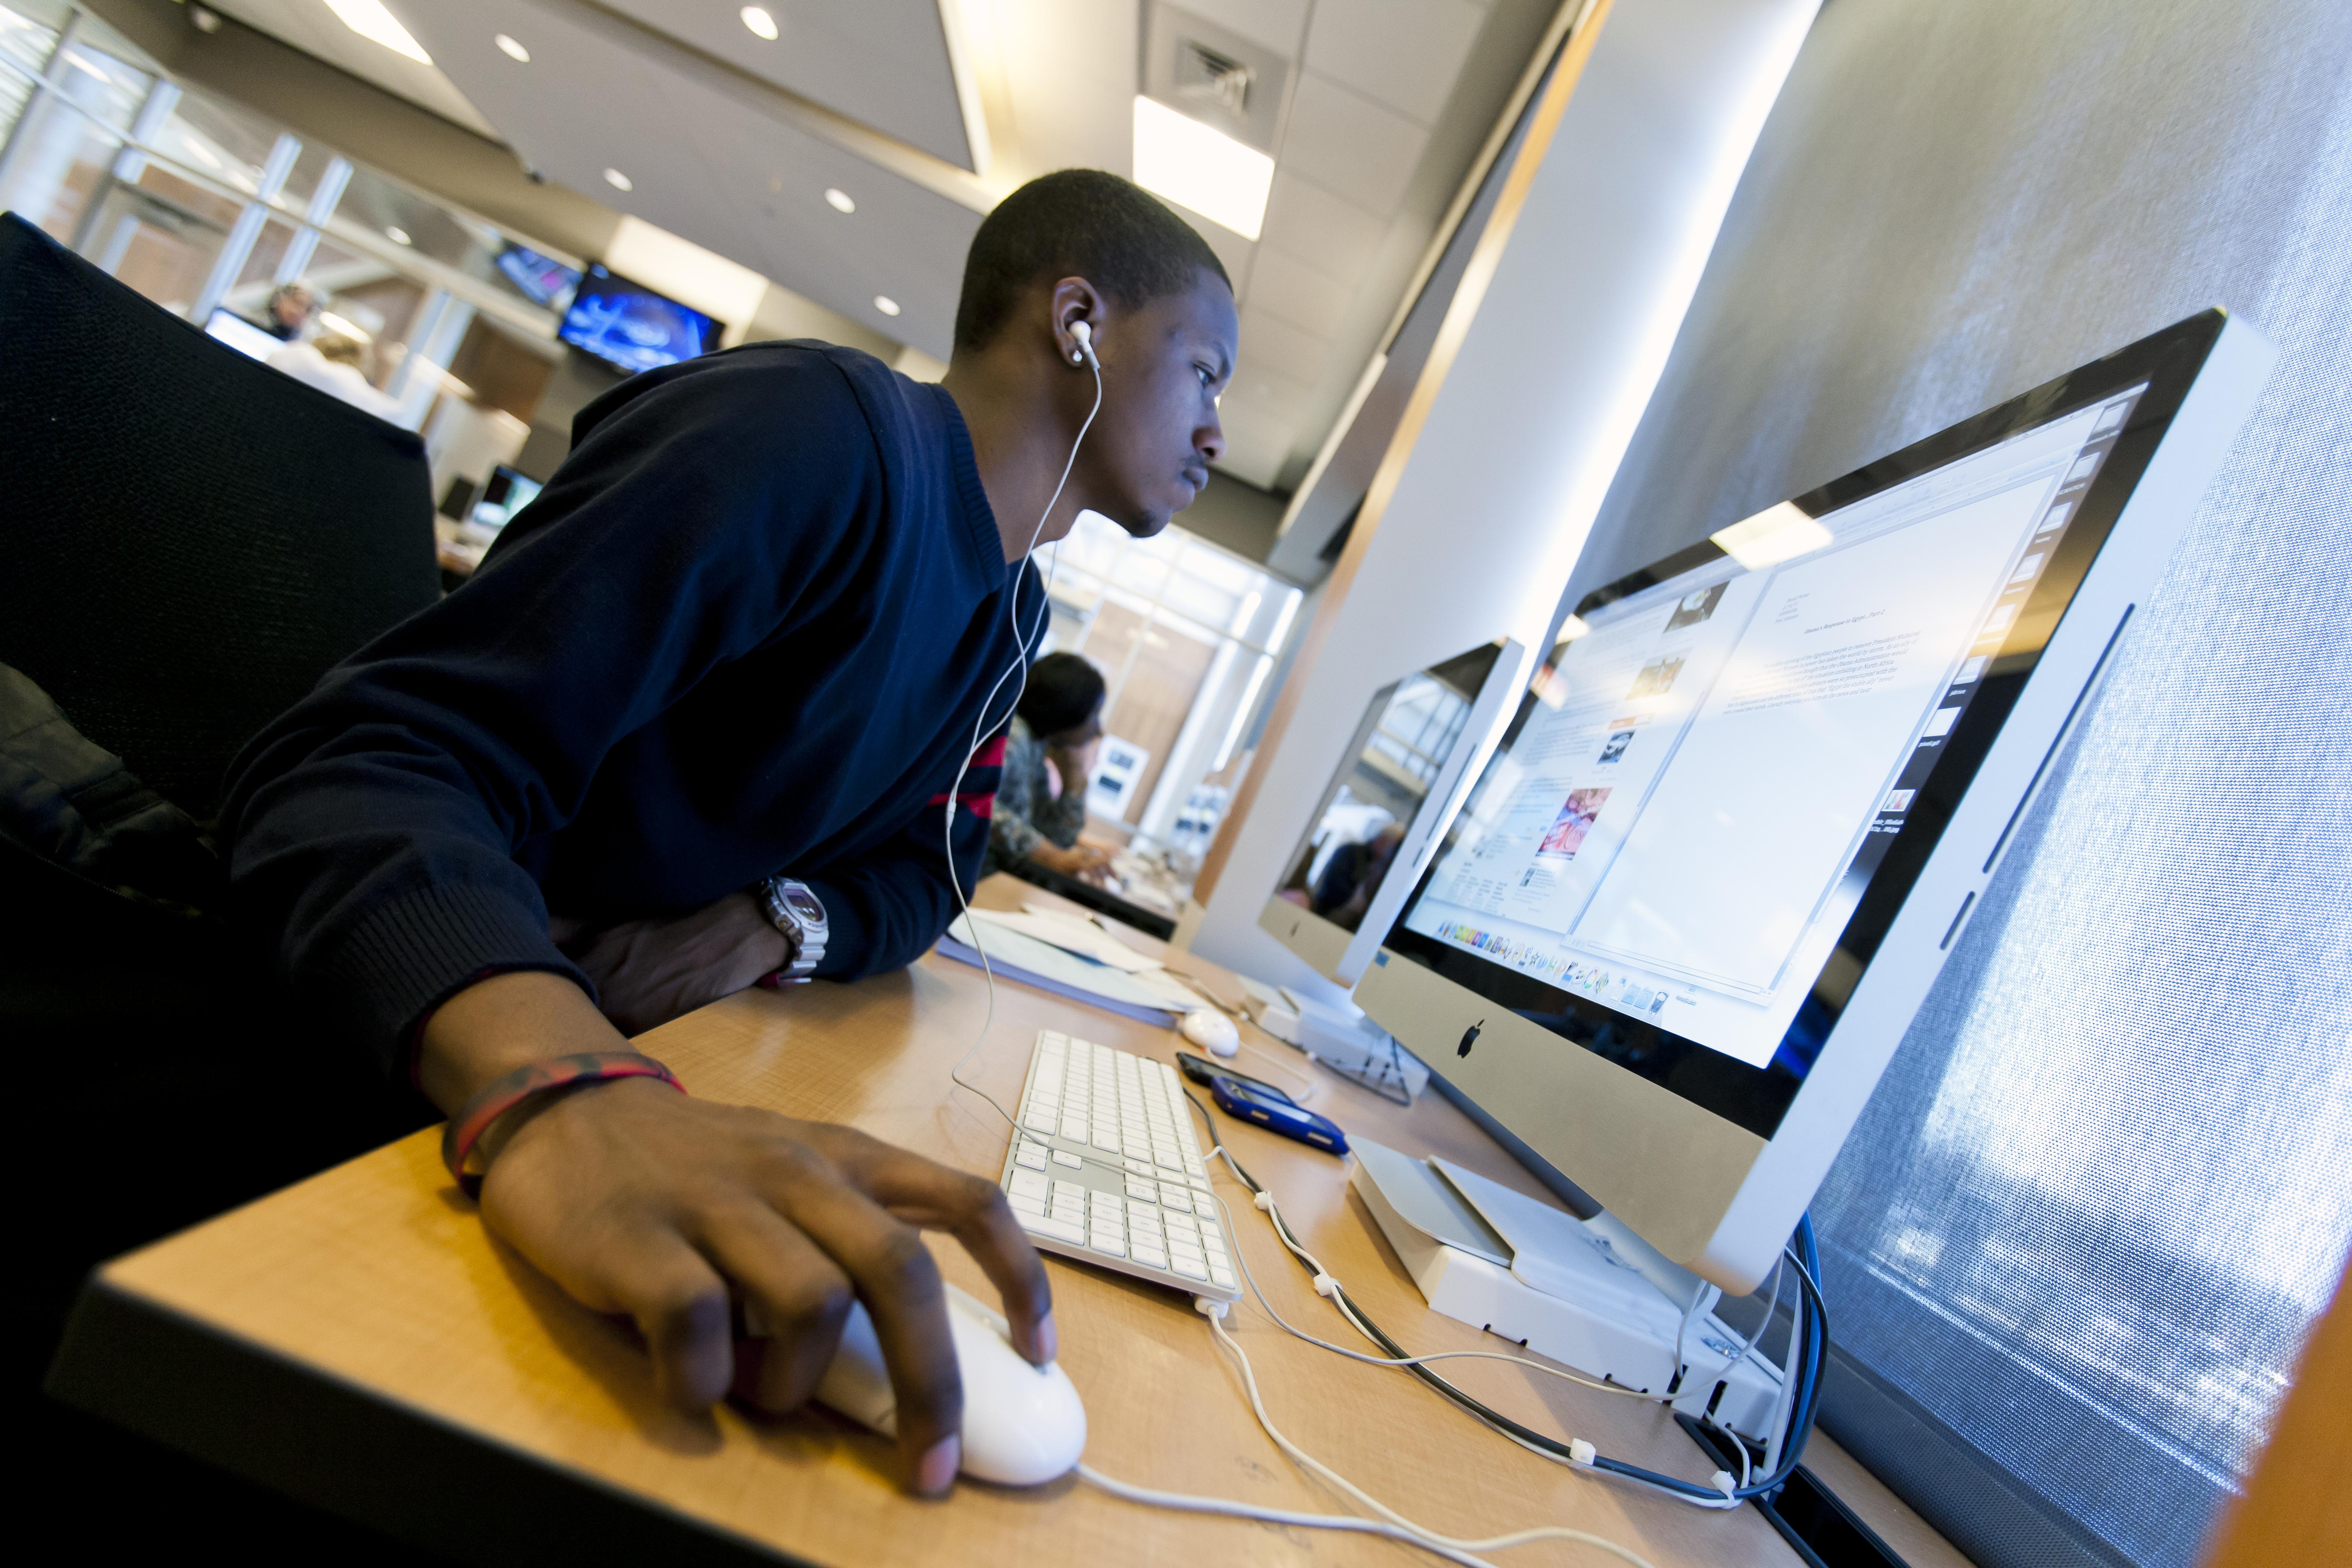 Student a desktop computer with headphones